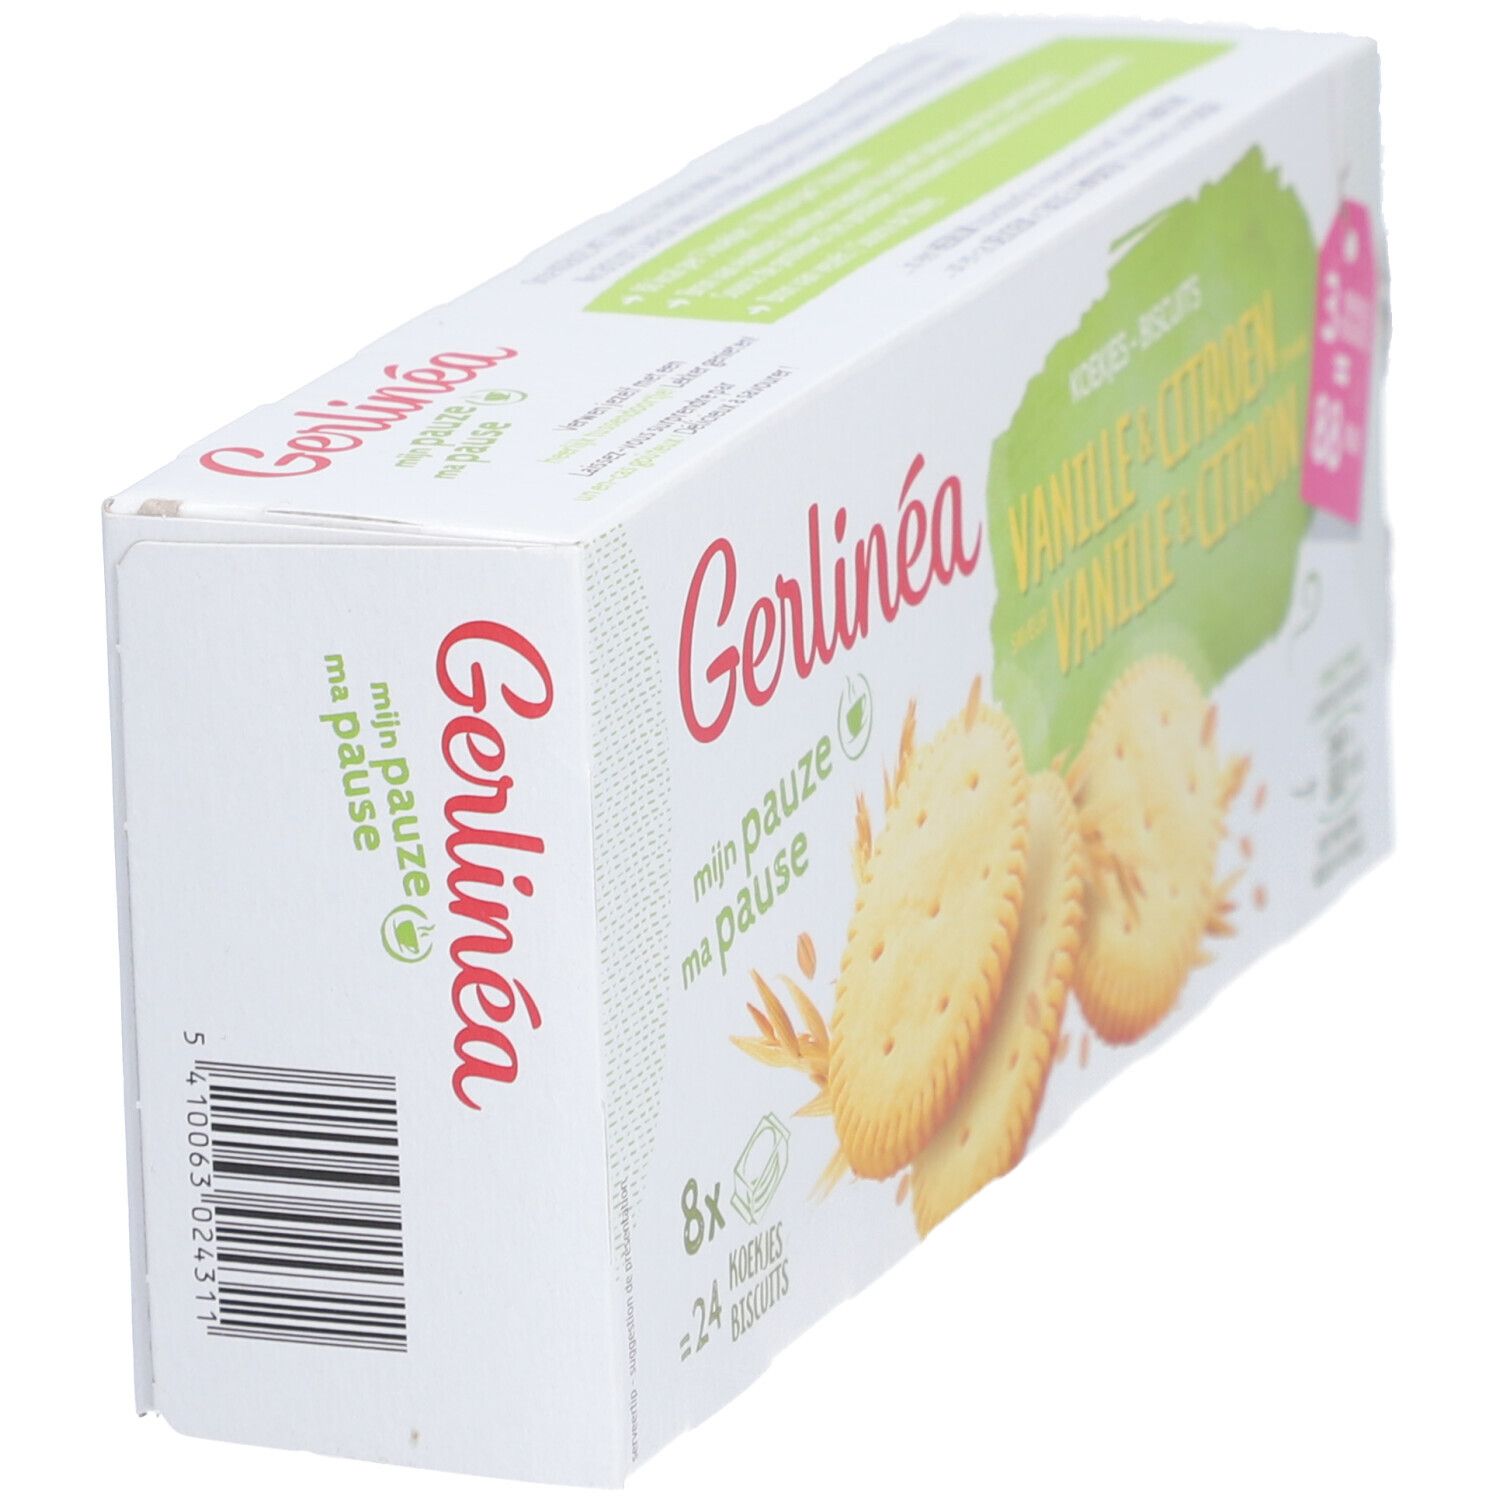 Gerlinéa Ma Pause Biscuits Vanille & Citron - shop ...